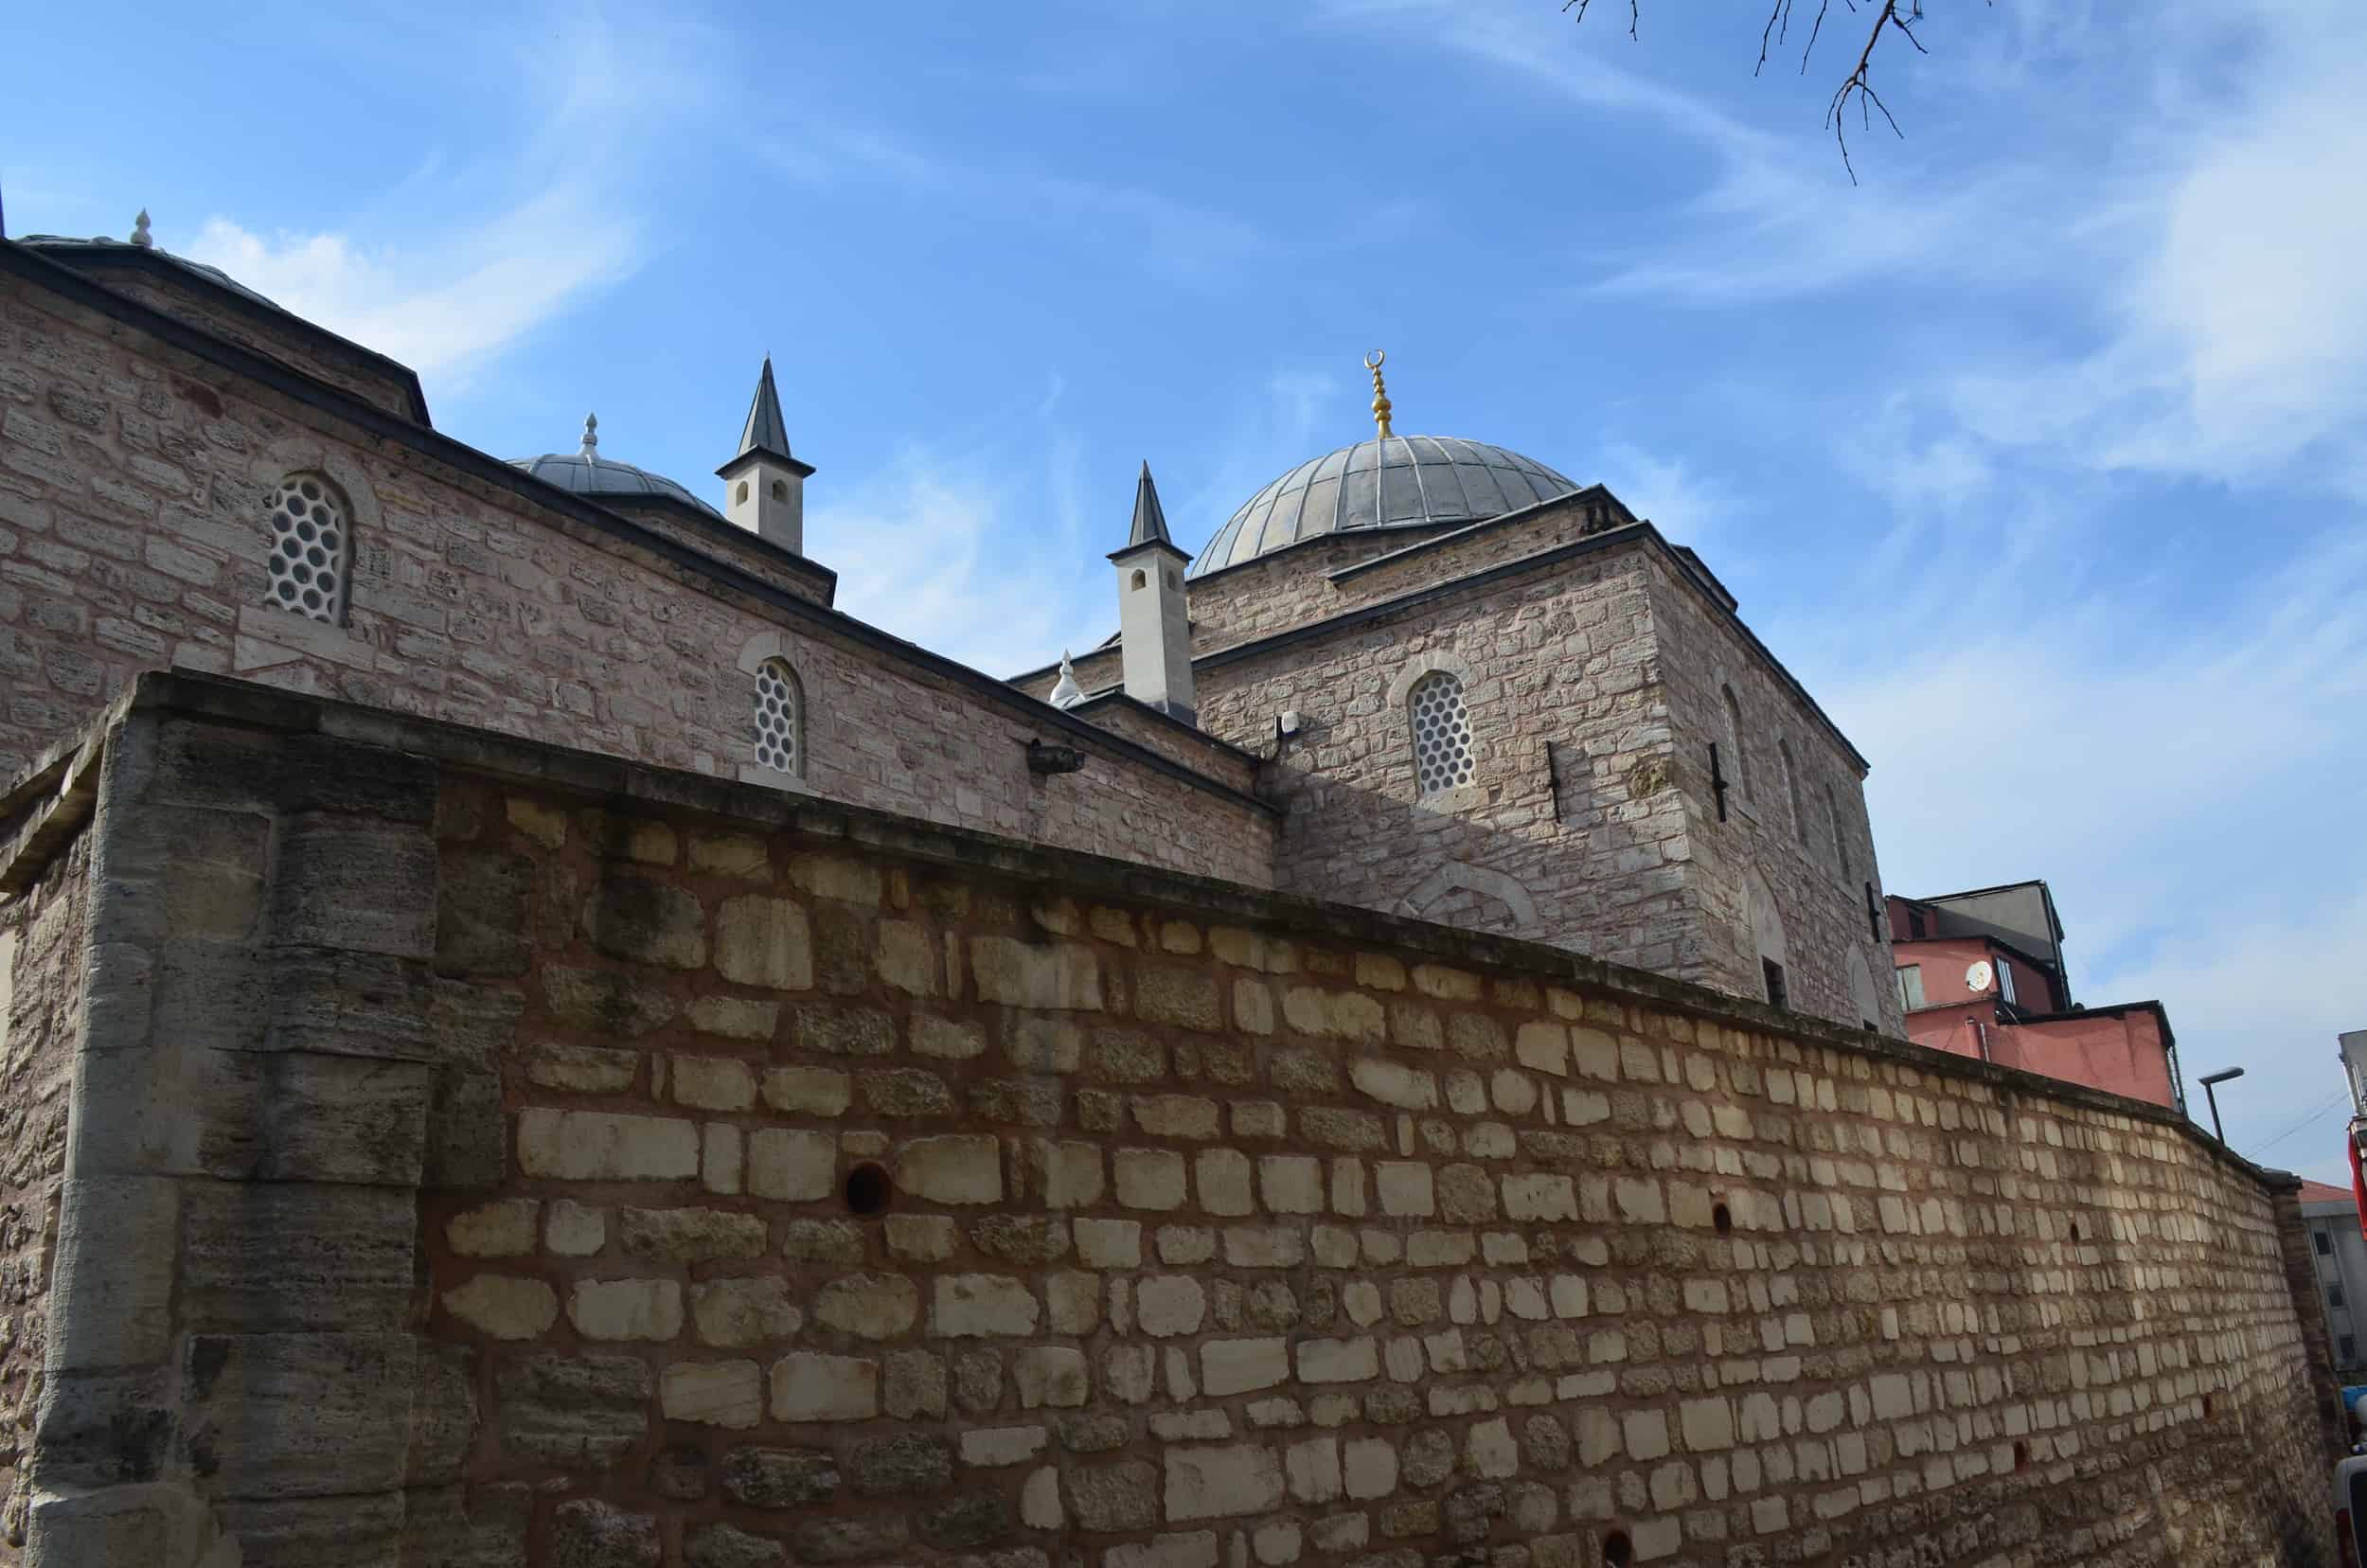 Rüstem Pasha Madrasa in Cağaloğlu, Istanbul, Turkey